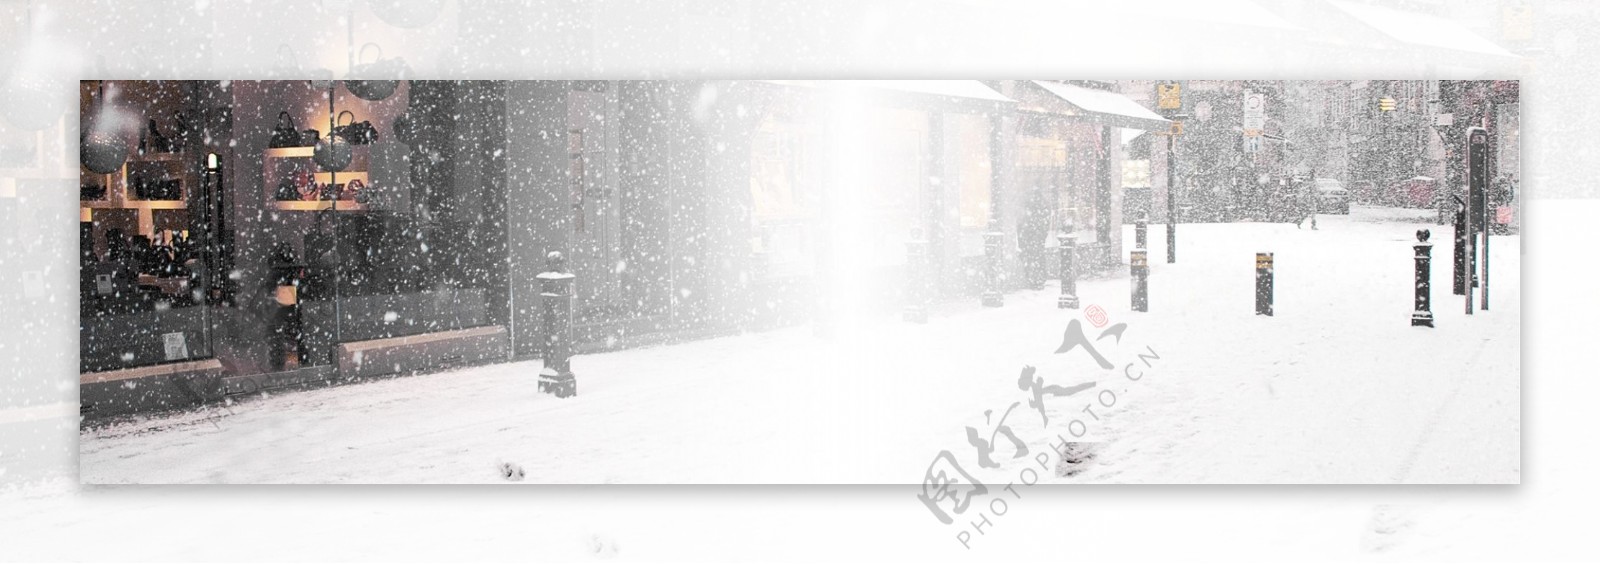 冬季雪景主题全屏背景素材14